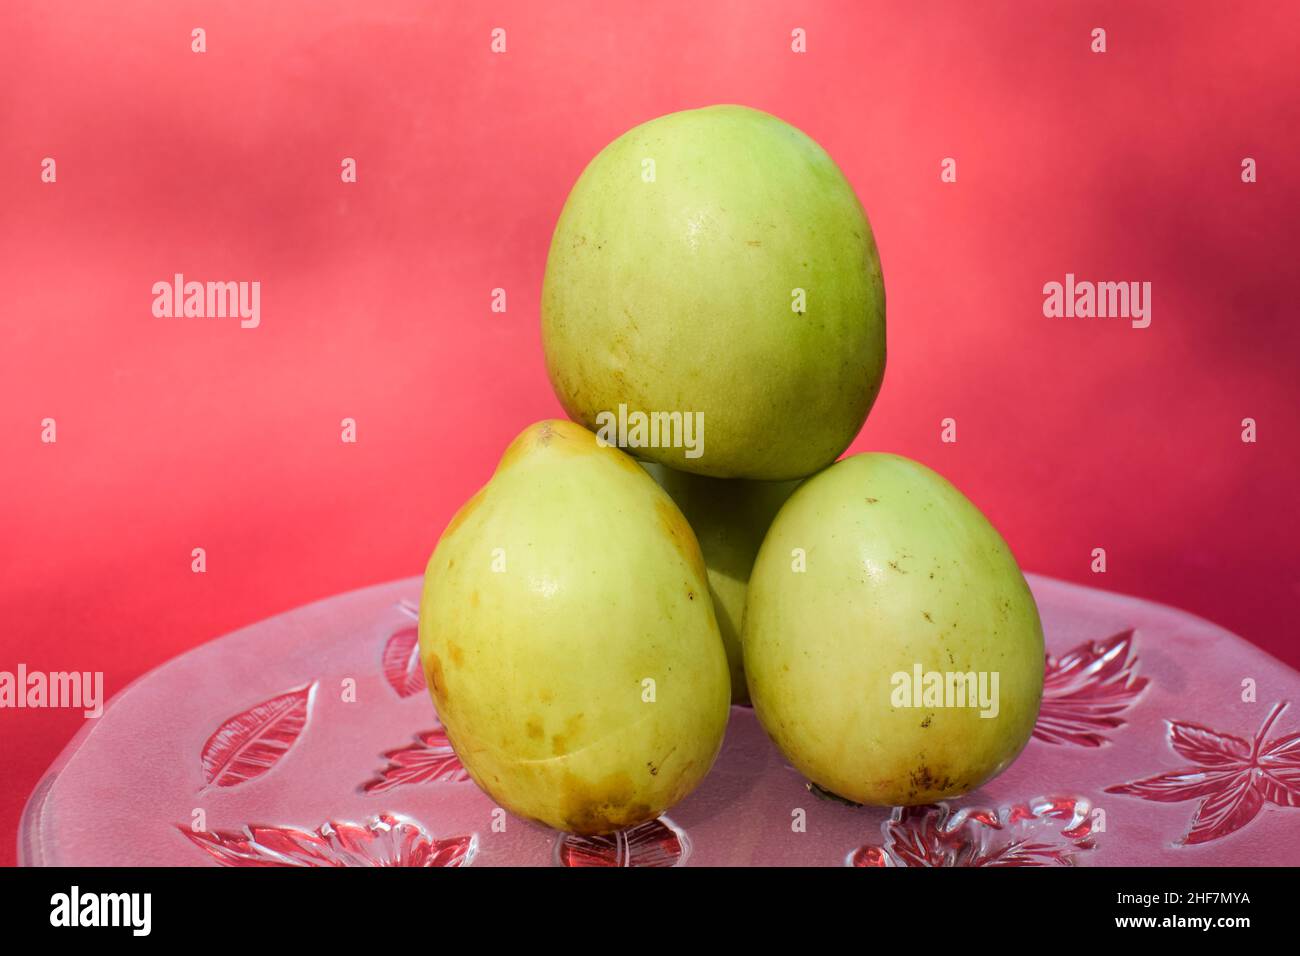 Frische und organische indische Früchte genannt Green Jujube oder Apple Jujube oder Ber Apfel. Grüne indische Jujuba-Pflaume Bora auf rotem Hintergrund Stockfoto